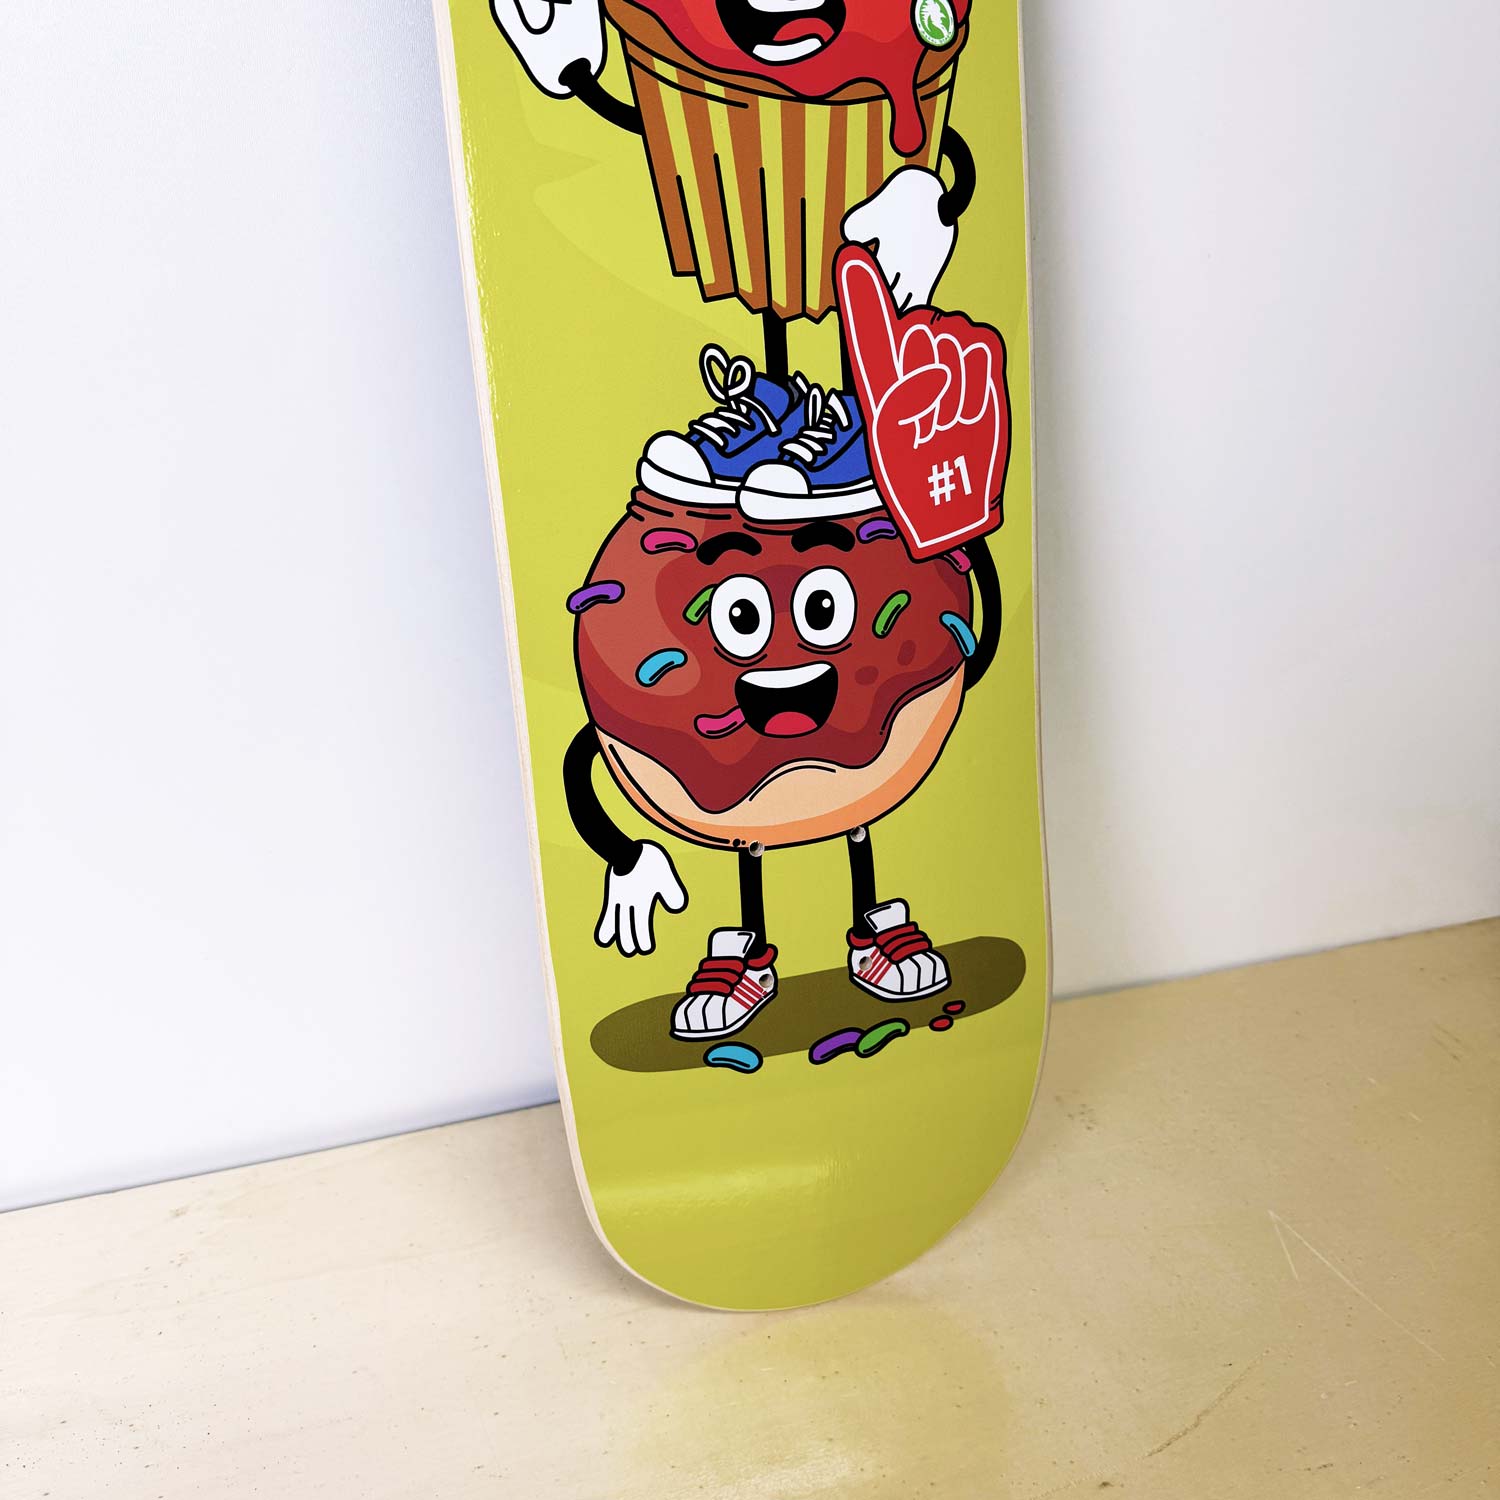 tavola skateboard con disegno di muffin e dolci - disegnato e prodotto da algal board